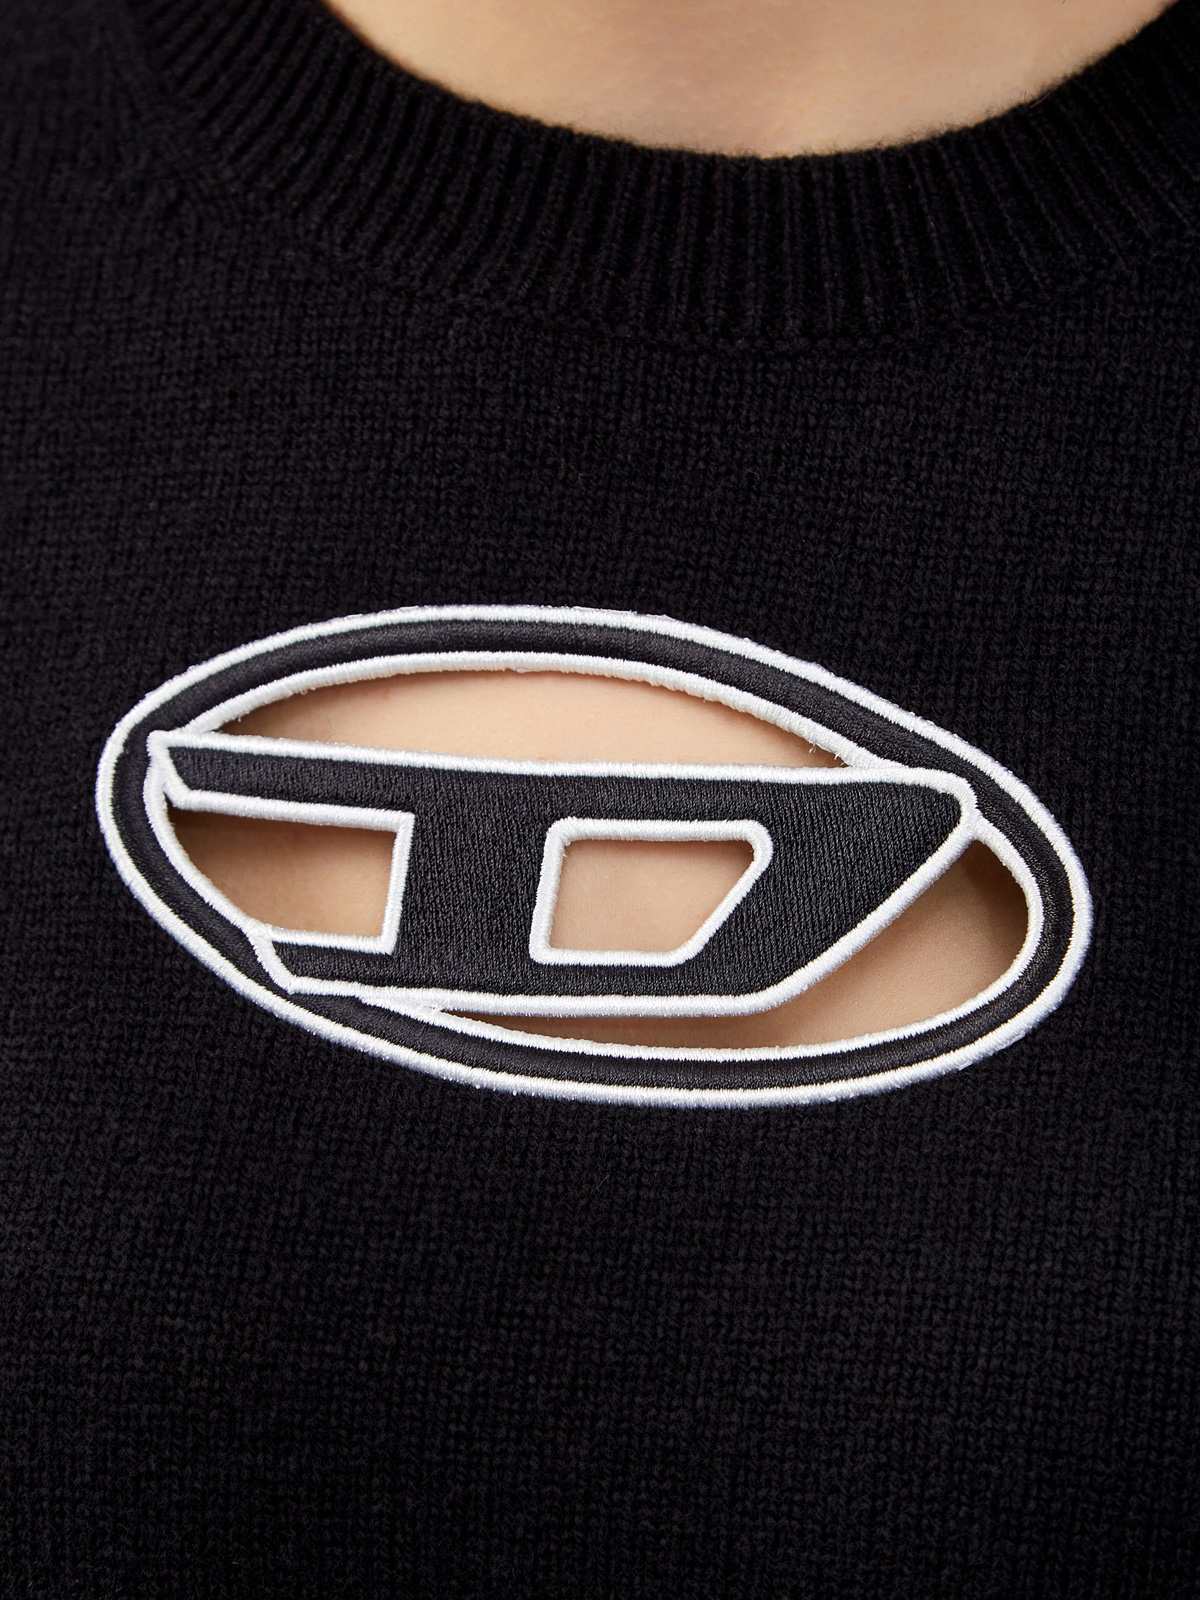 Джемпер из шерсти и кашемира с контрастным логотипом Oval D DIESEL, цвет черный, размер M;L - фото 5